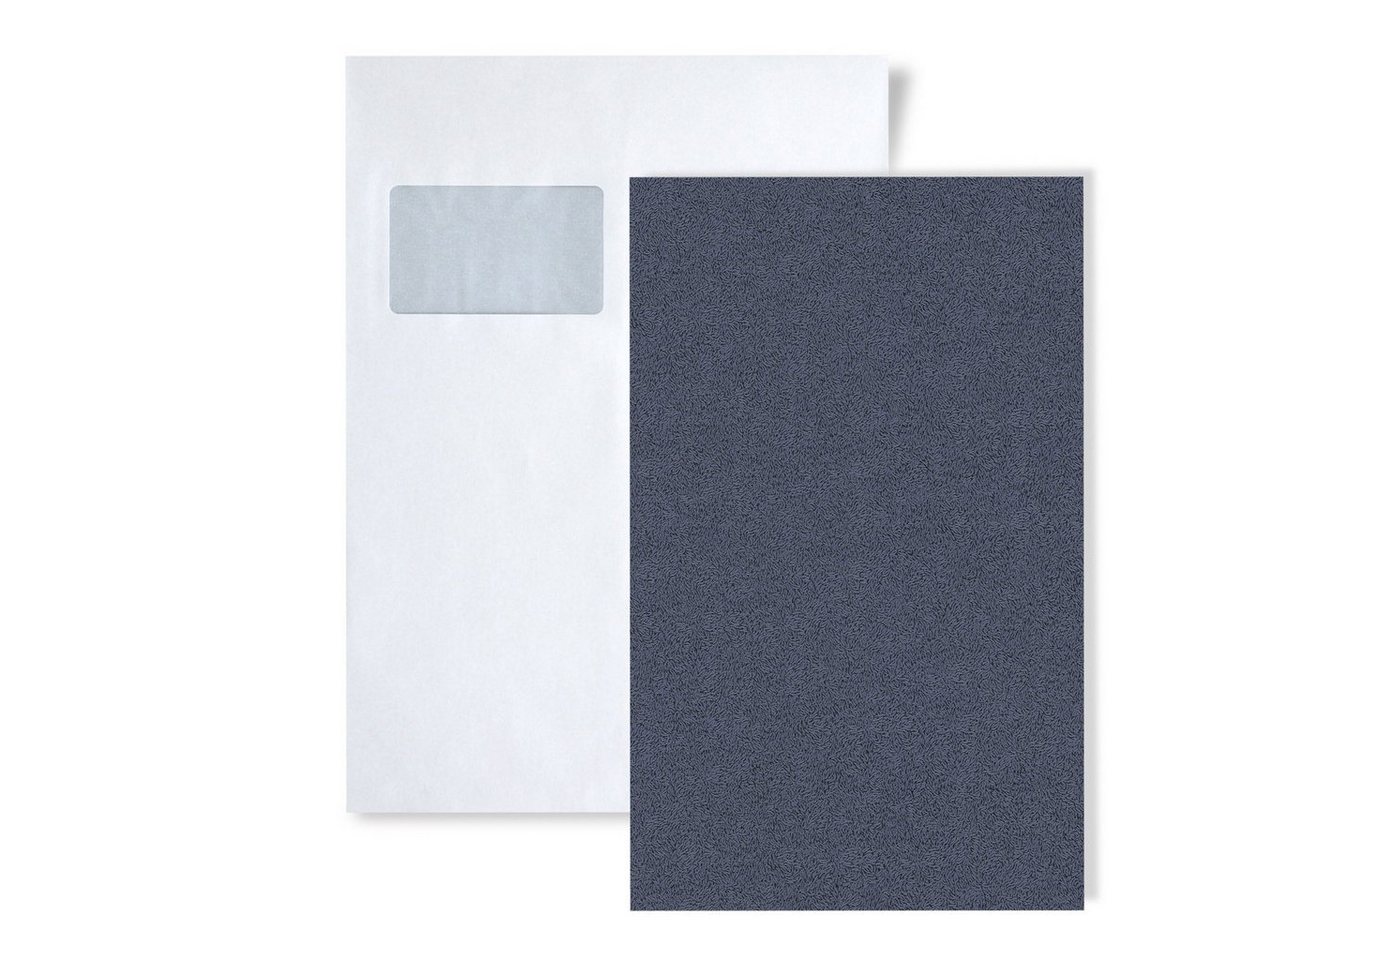 Edem Papiertapete S-85047BR22, leicht glänzend, Ton-in-Ton, unifarben, Strukturmuster, (1 Musterblatt, ca. A5-A4), blau, kobalt-blau, dunkel-blau, silber von Edem